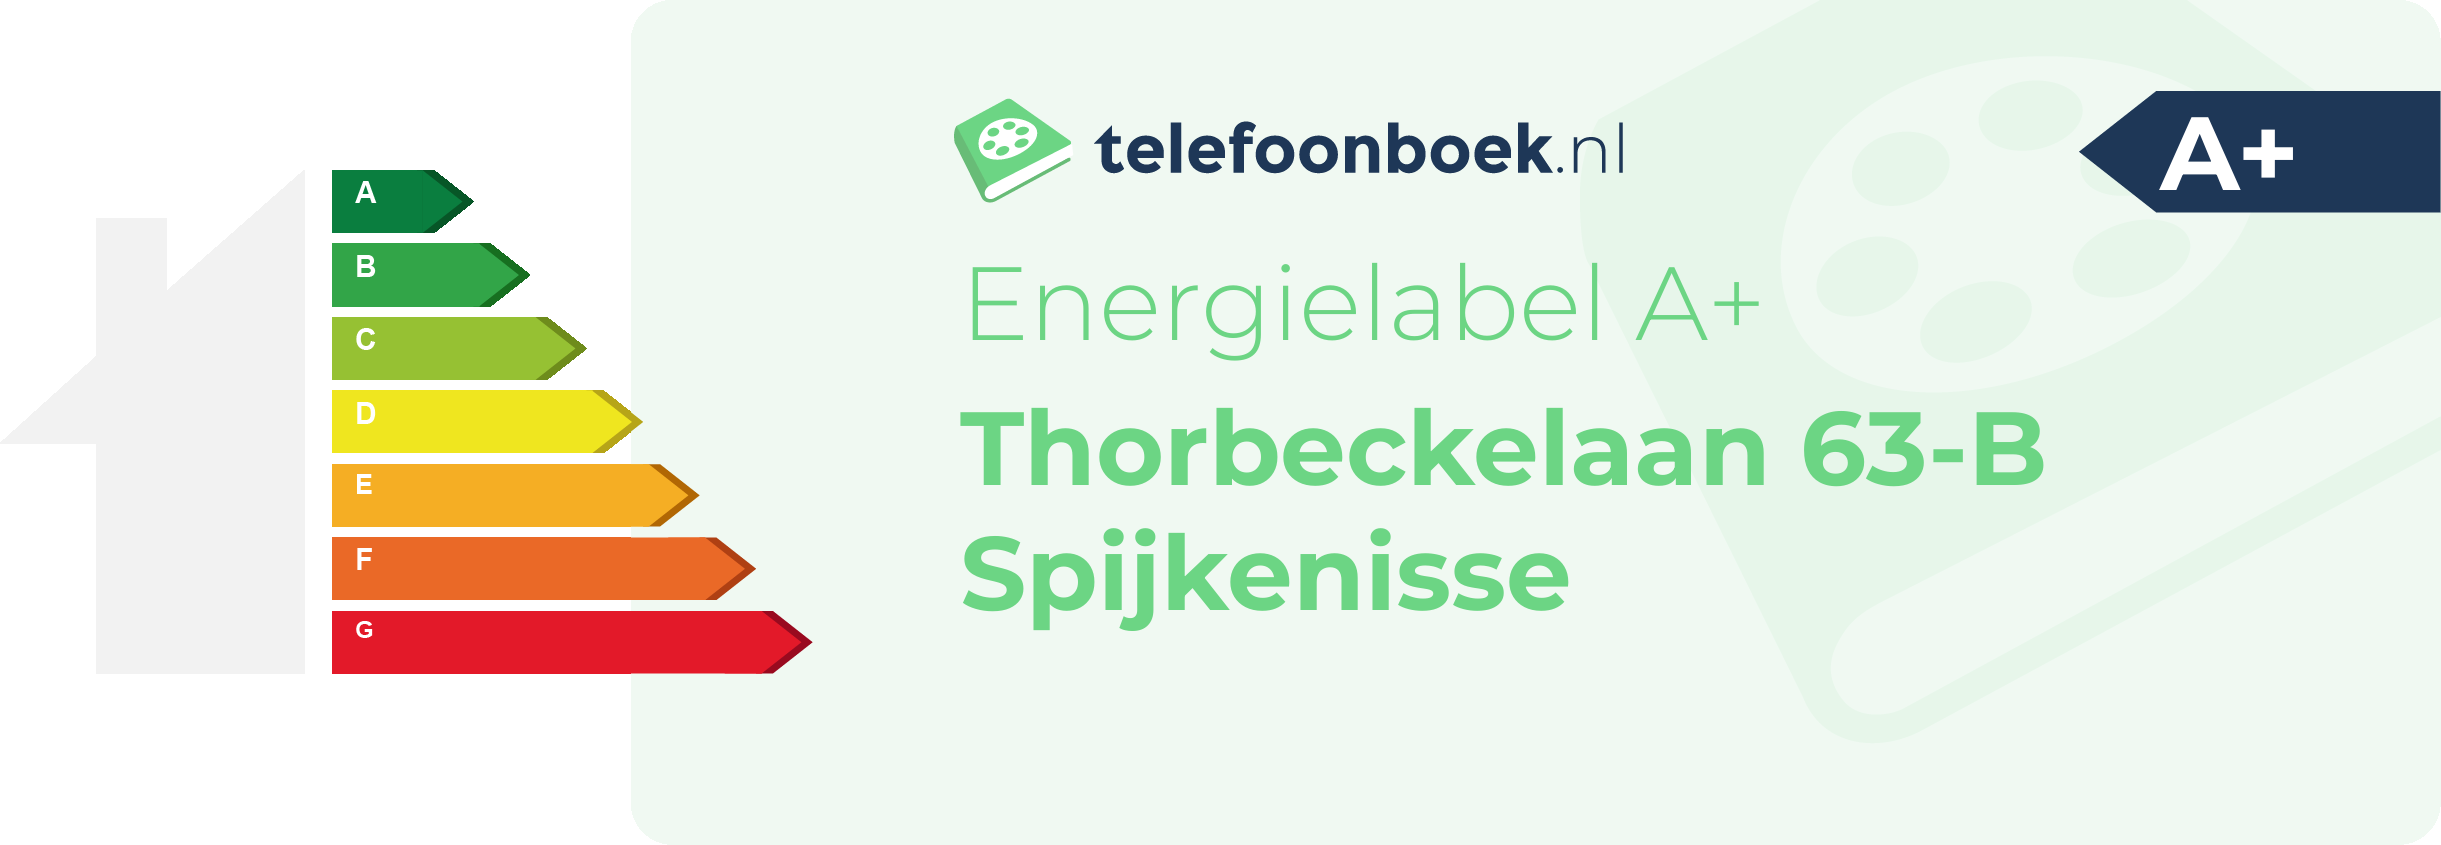 Energielabel Thorbeckelaan 63-B Spijkenisse